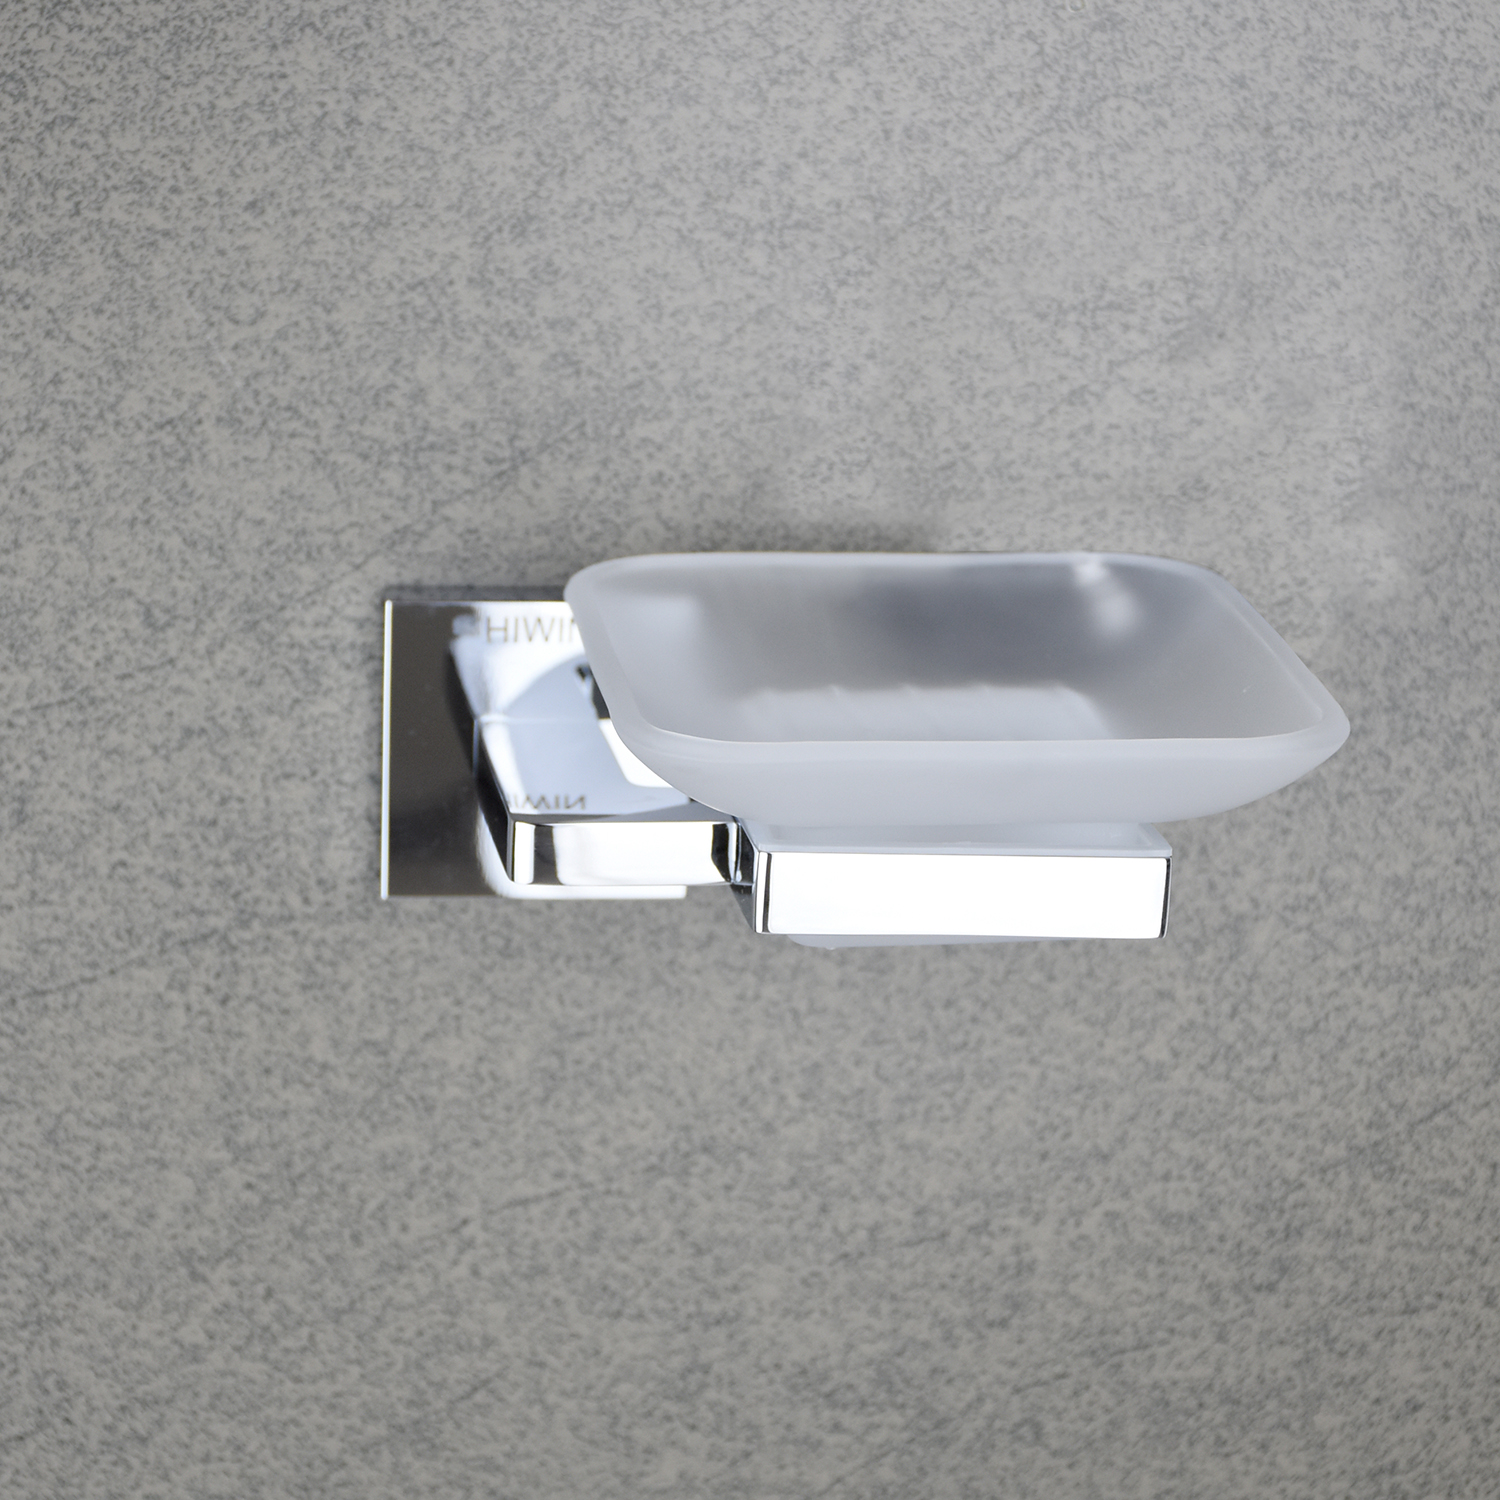 Kệ đựng xà phòng nhà tắm chất liệu đồng mặt gương cao cấp Y-1201A Hiwin